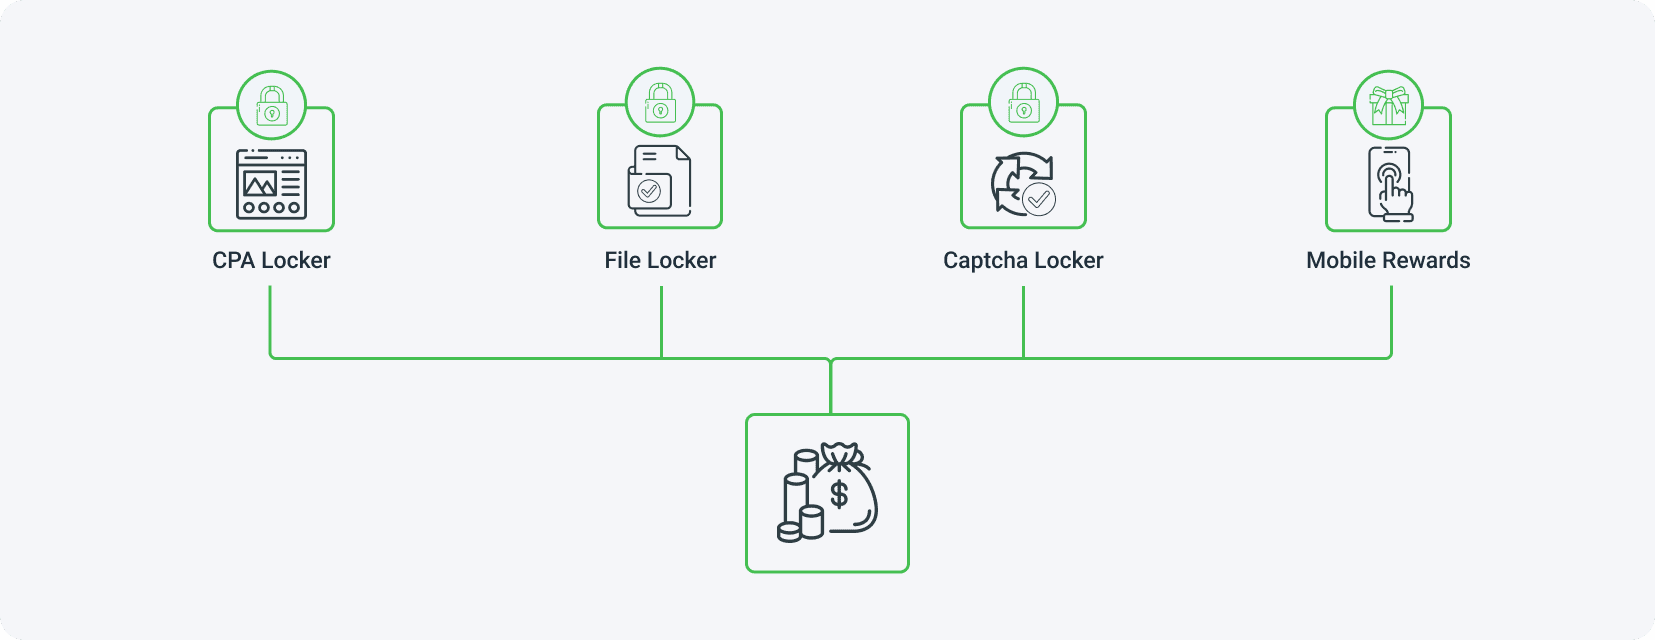 MyLead oferuje cztery typy Content Lockerów - CPA Locker, File Locker, Captcha Locker i Mobile Rewards.